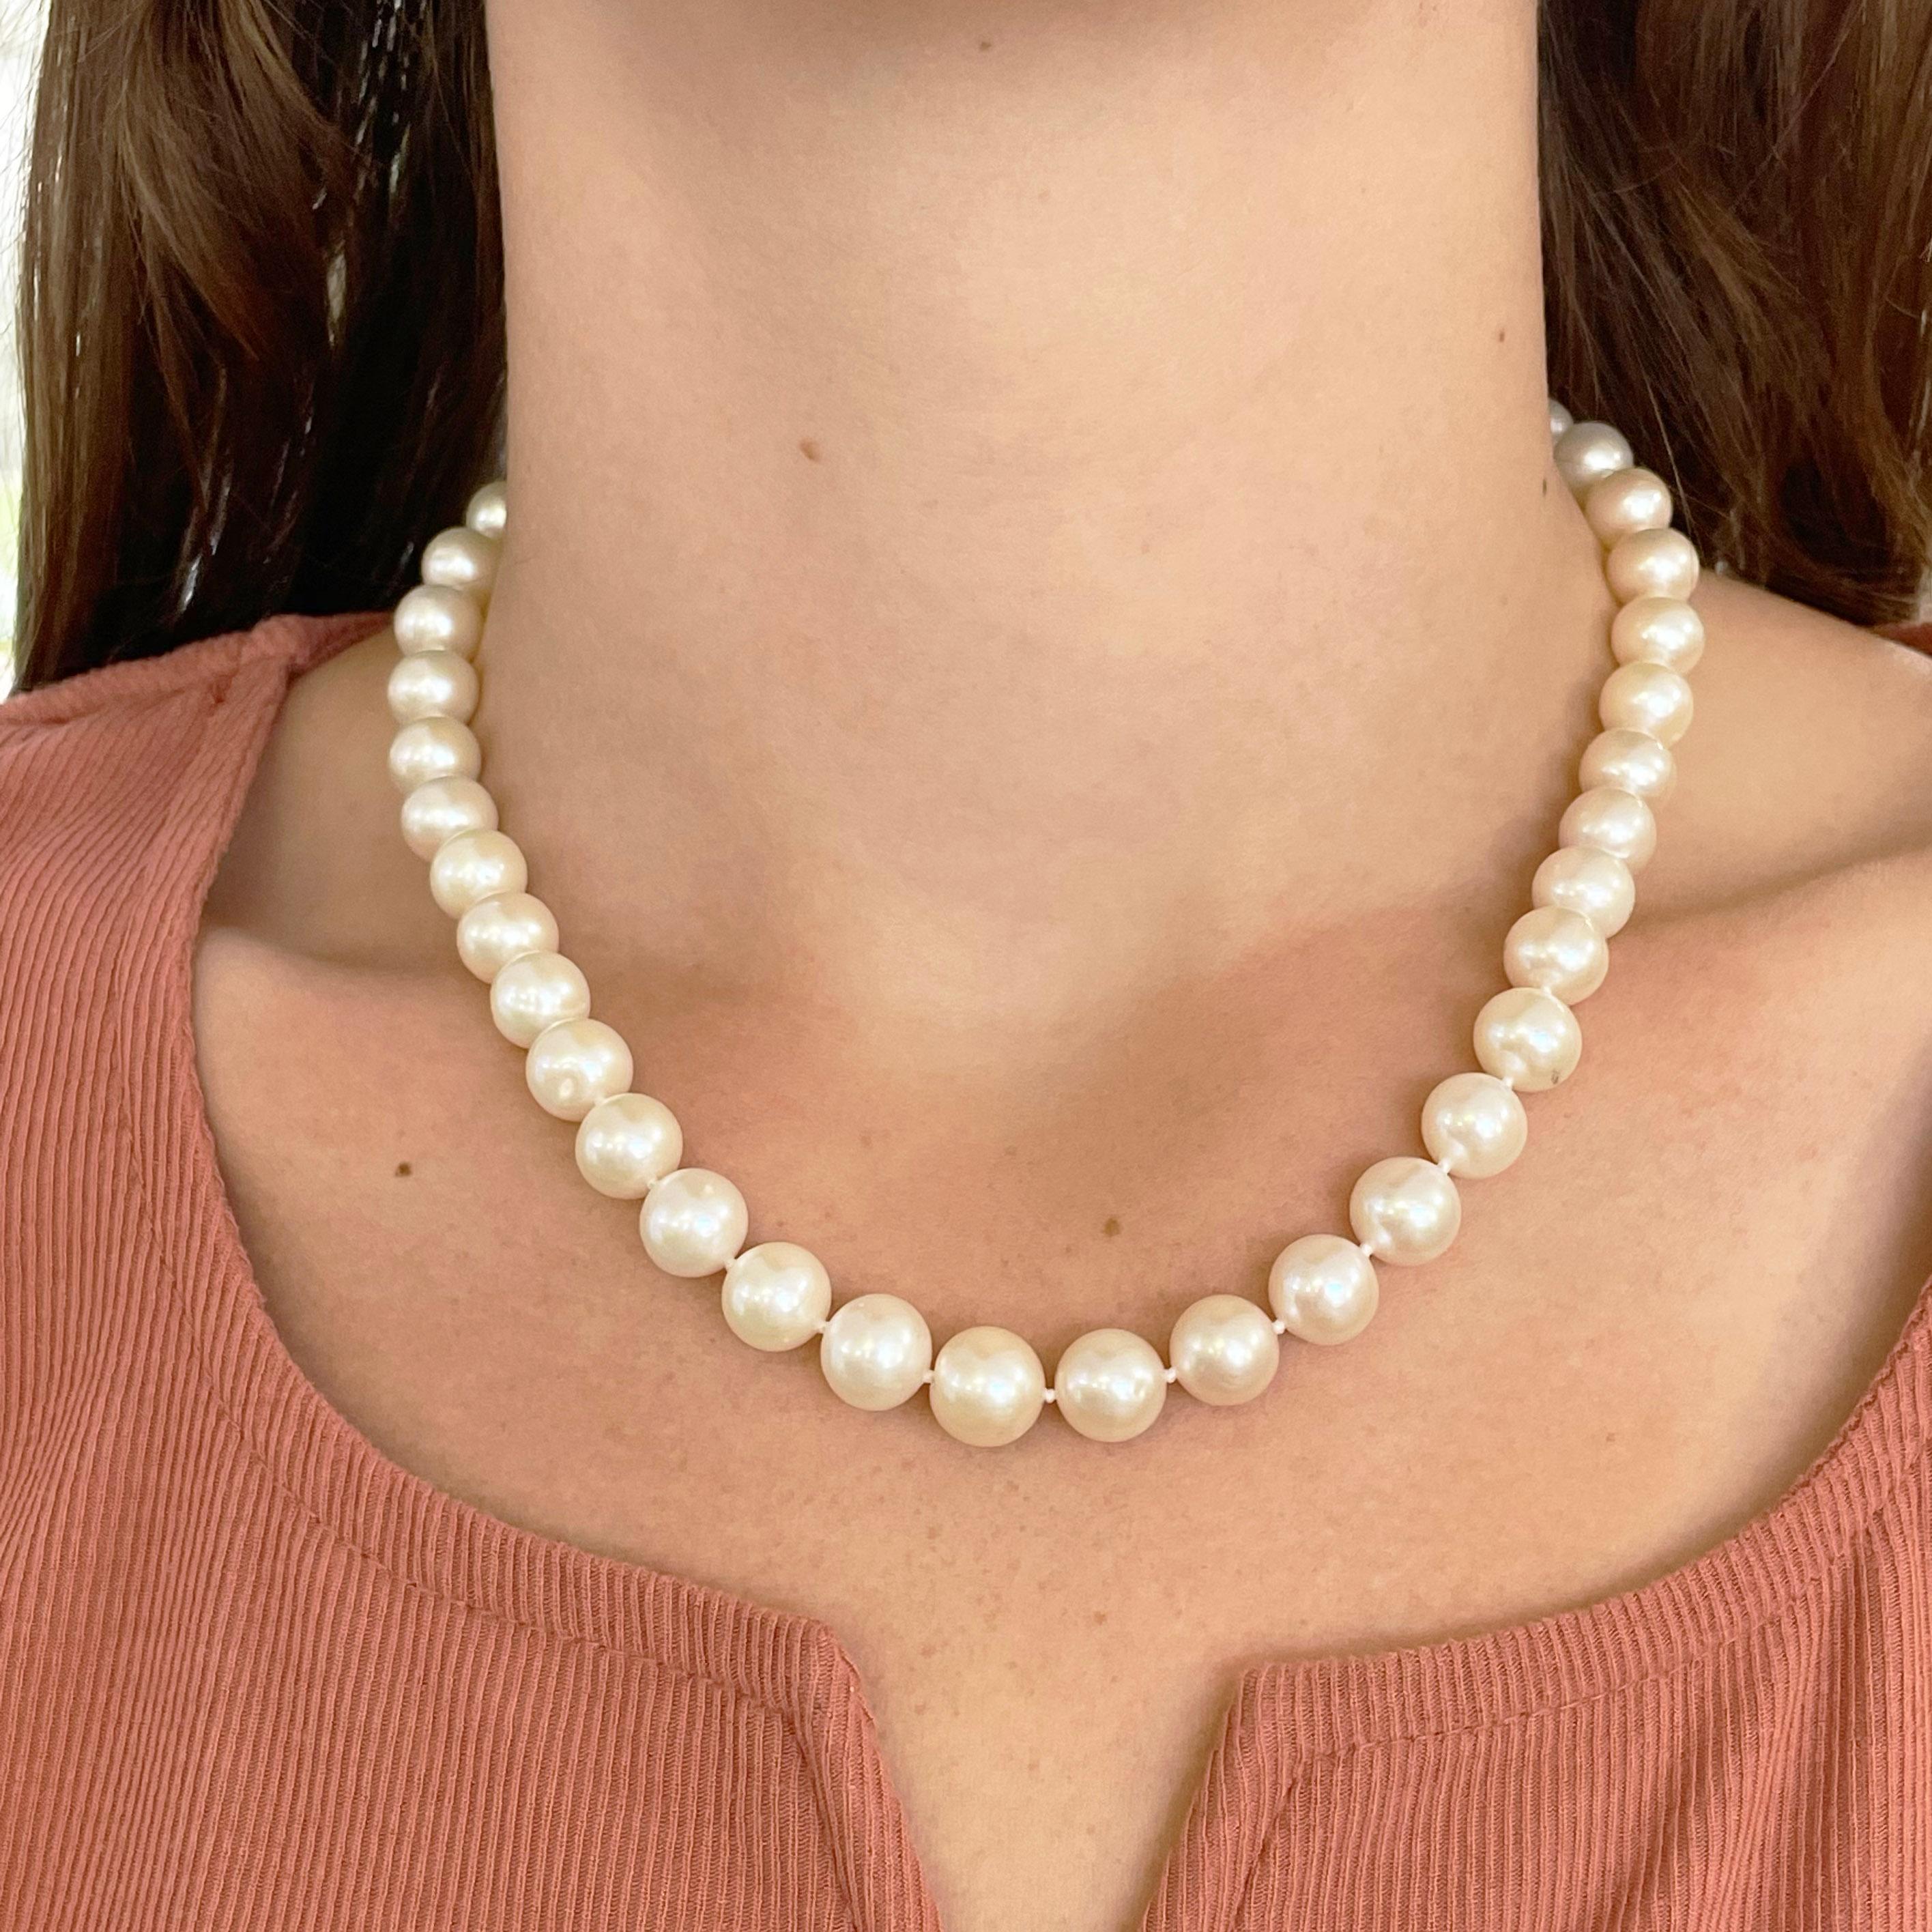 Jedes Mädchen braucht eine Perlenkette, um ihre Schmucksammlung zu vervollständigen. Diese 18 Zoll Süßwasserperlen sind eine gute Wahl! Und die gut aufeinander abgestimmten Perlen mit schönen Nuancen von Rosa und Hellbraun und einem schönen Glanz